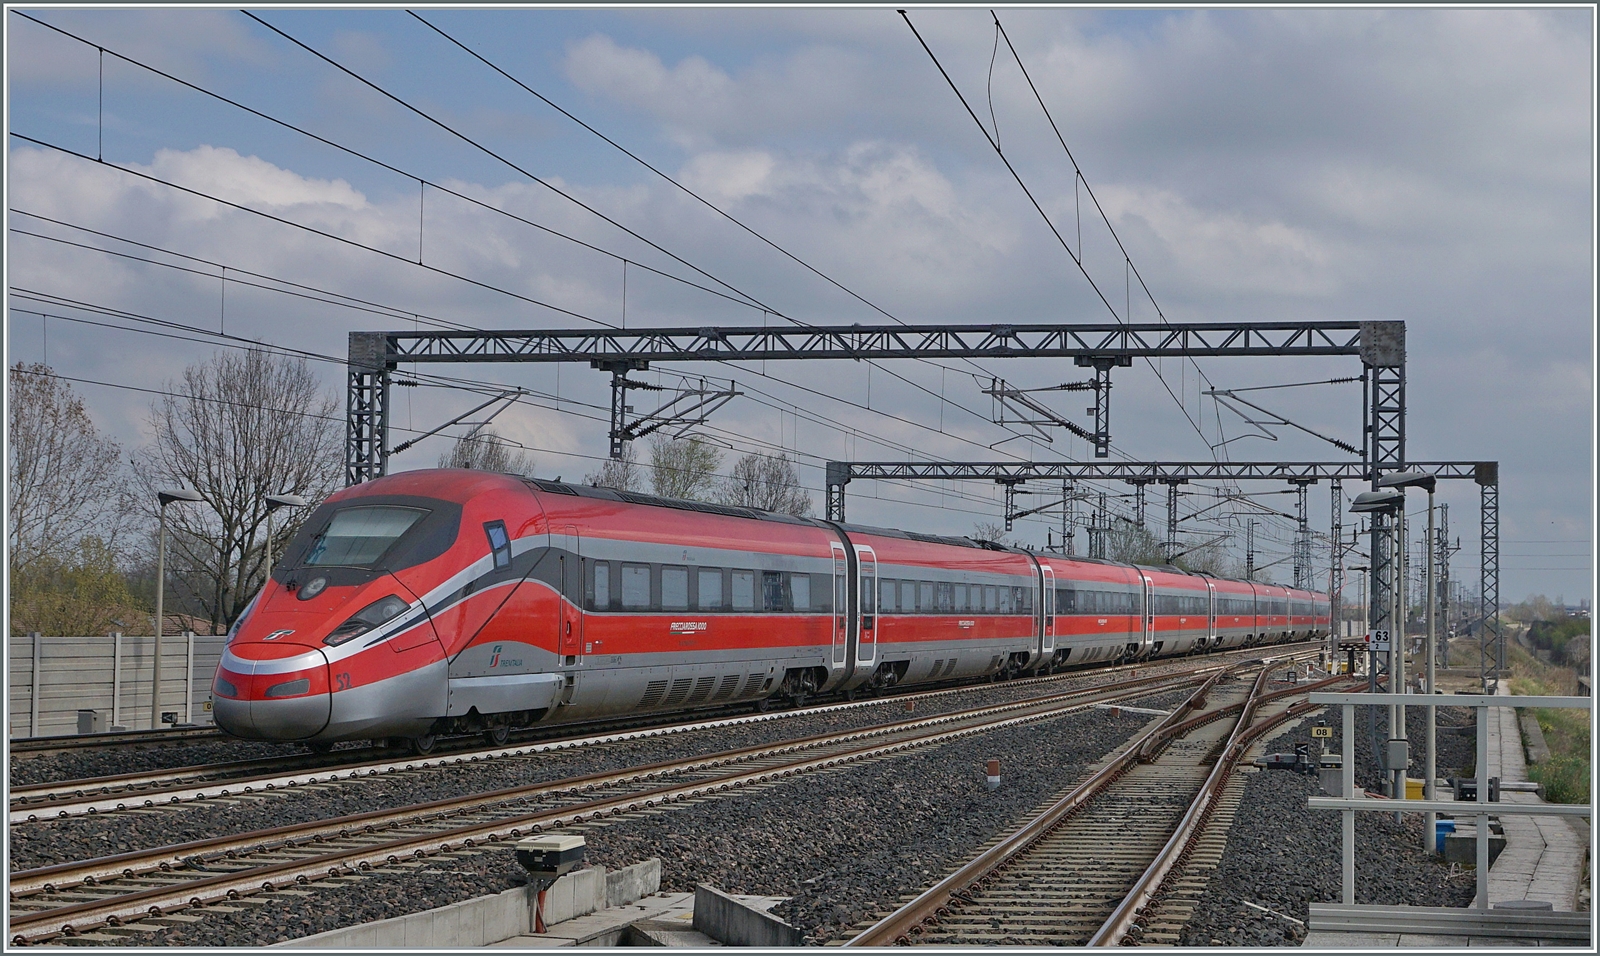 Der FS Trenitalia ETR 400 052 macht seiner Bezeichnung alle Ehre und fährt unglaublich schnell durch den Bahnhof Reggio Emilia AV Richtung Süden.

14. März 2023

